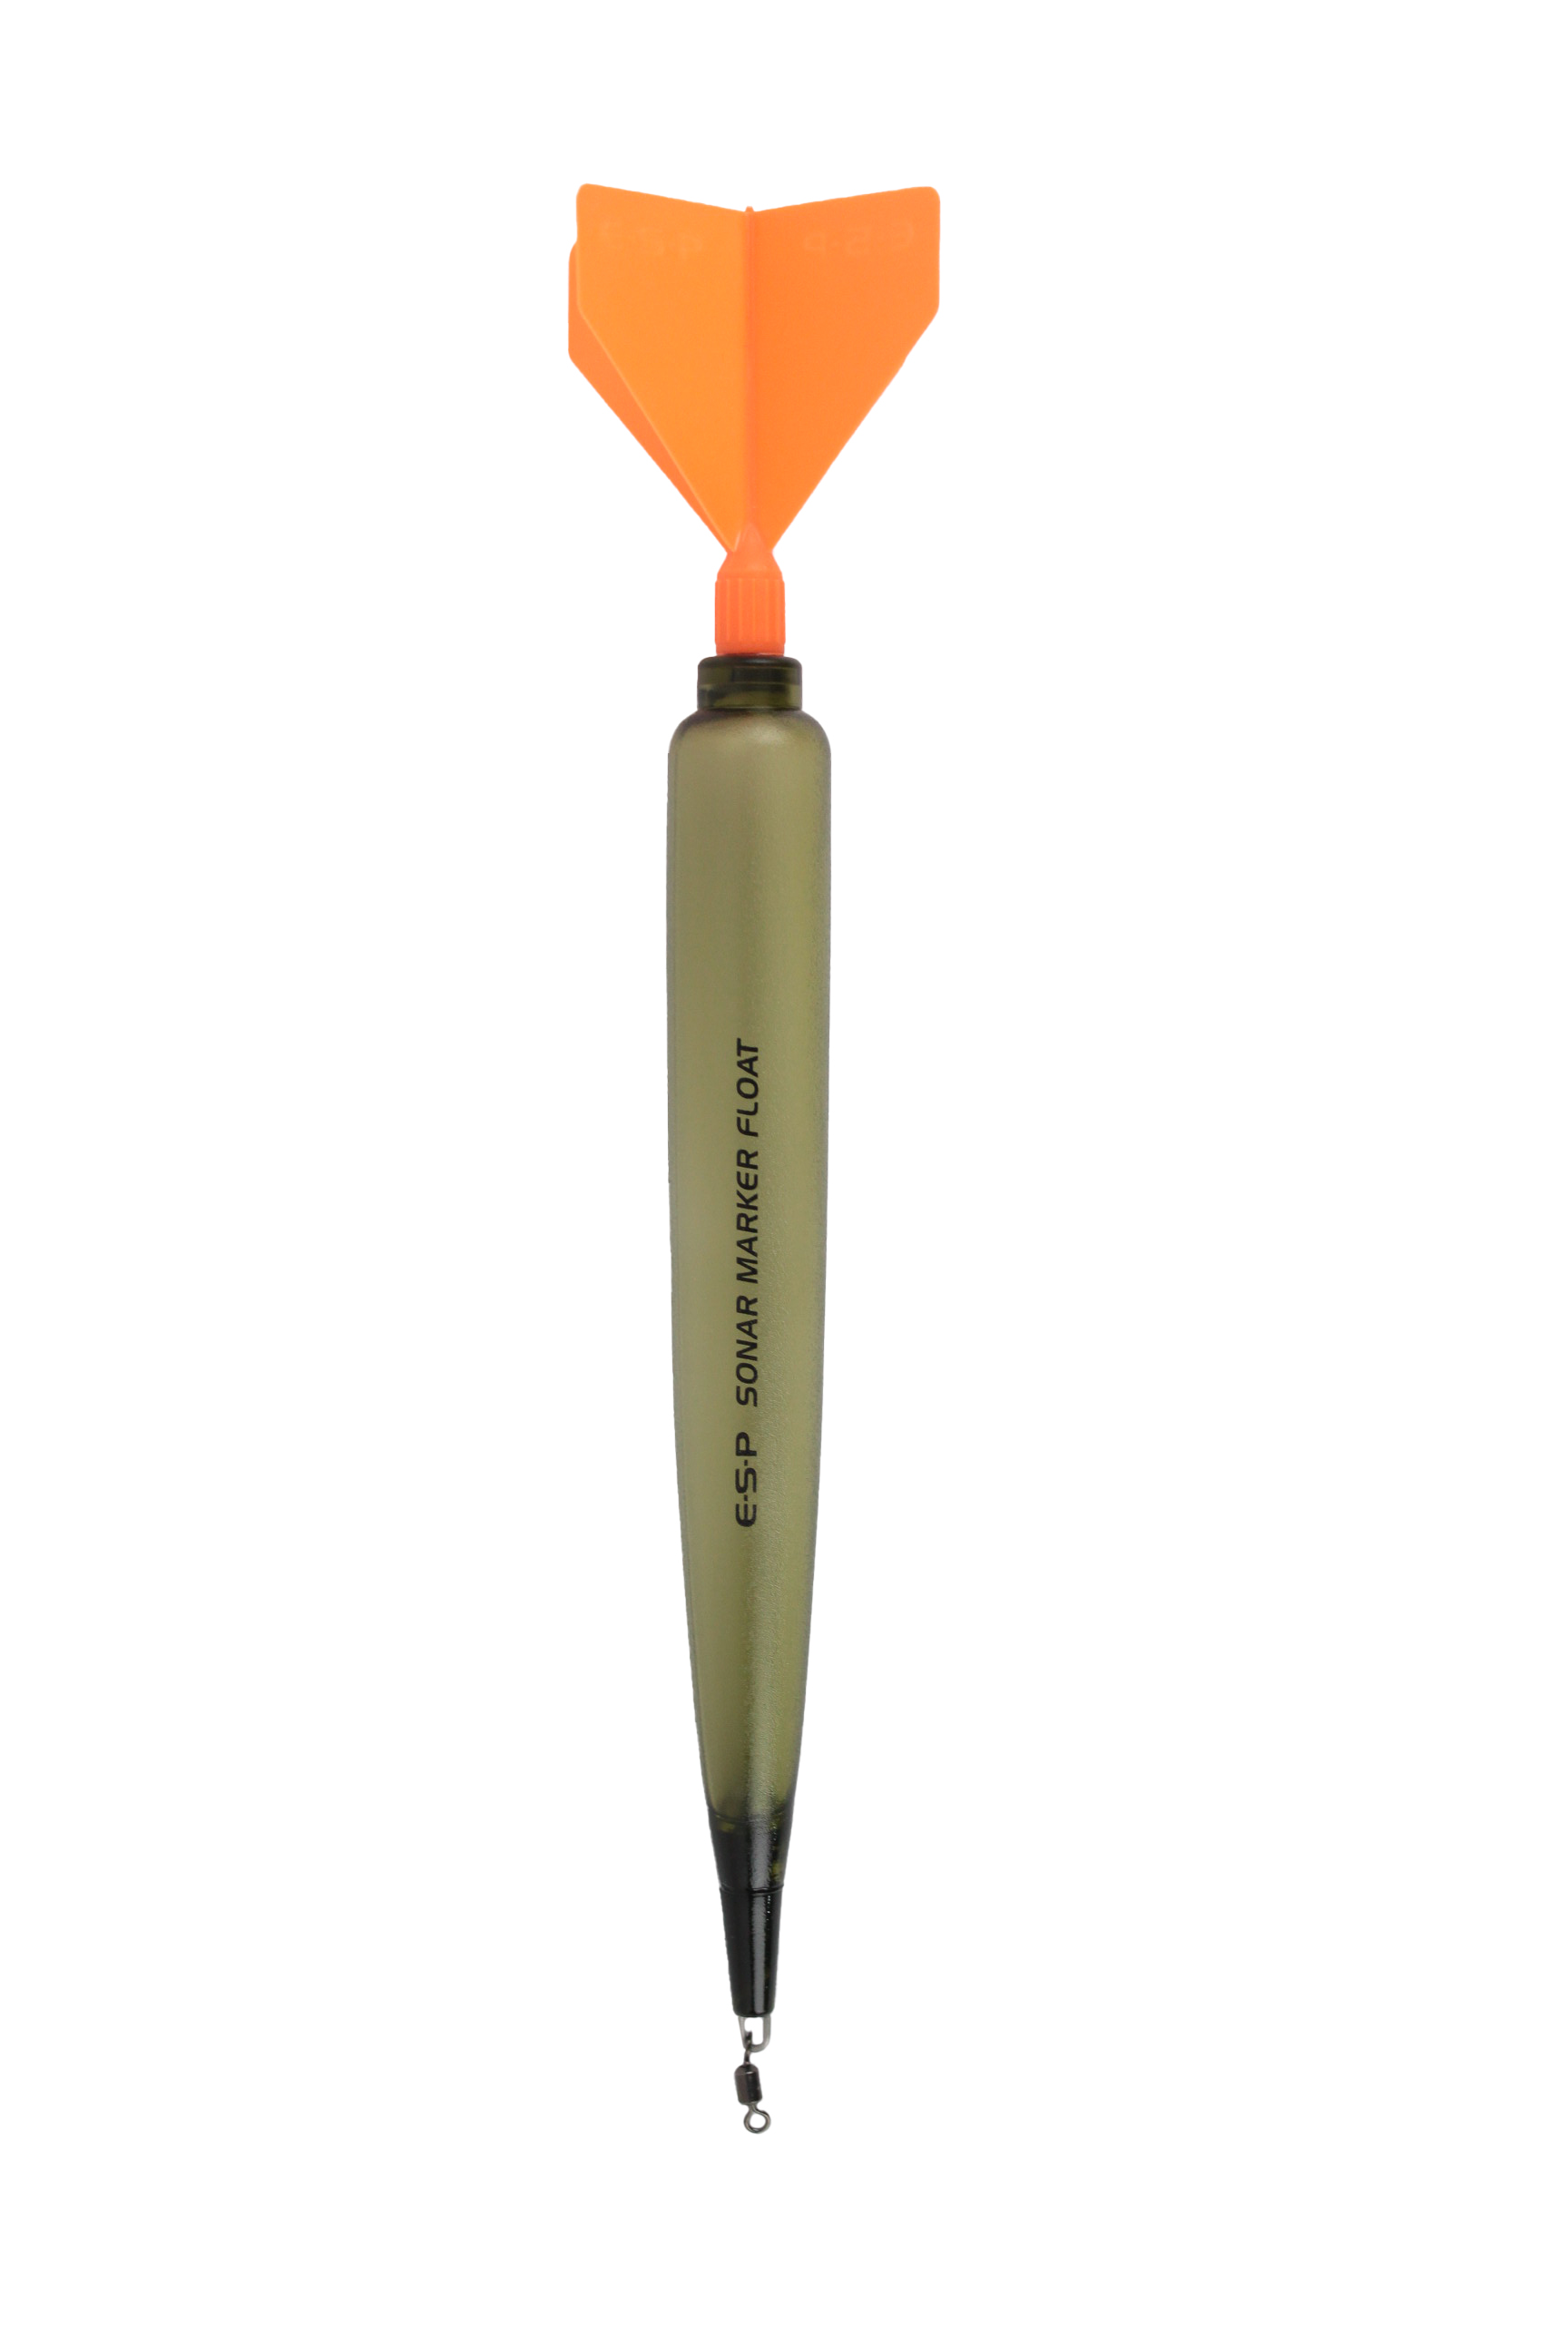 Поплавок ESP Sonar marker Float маркерный